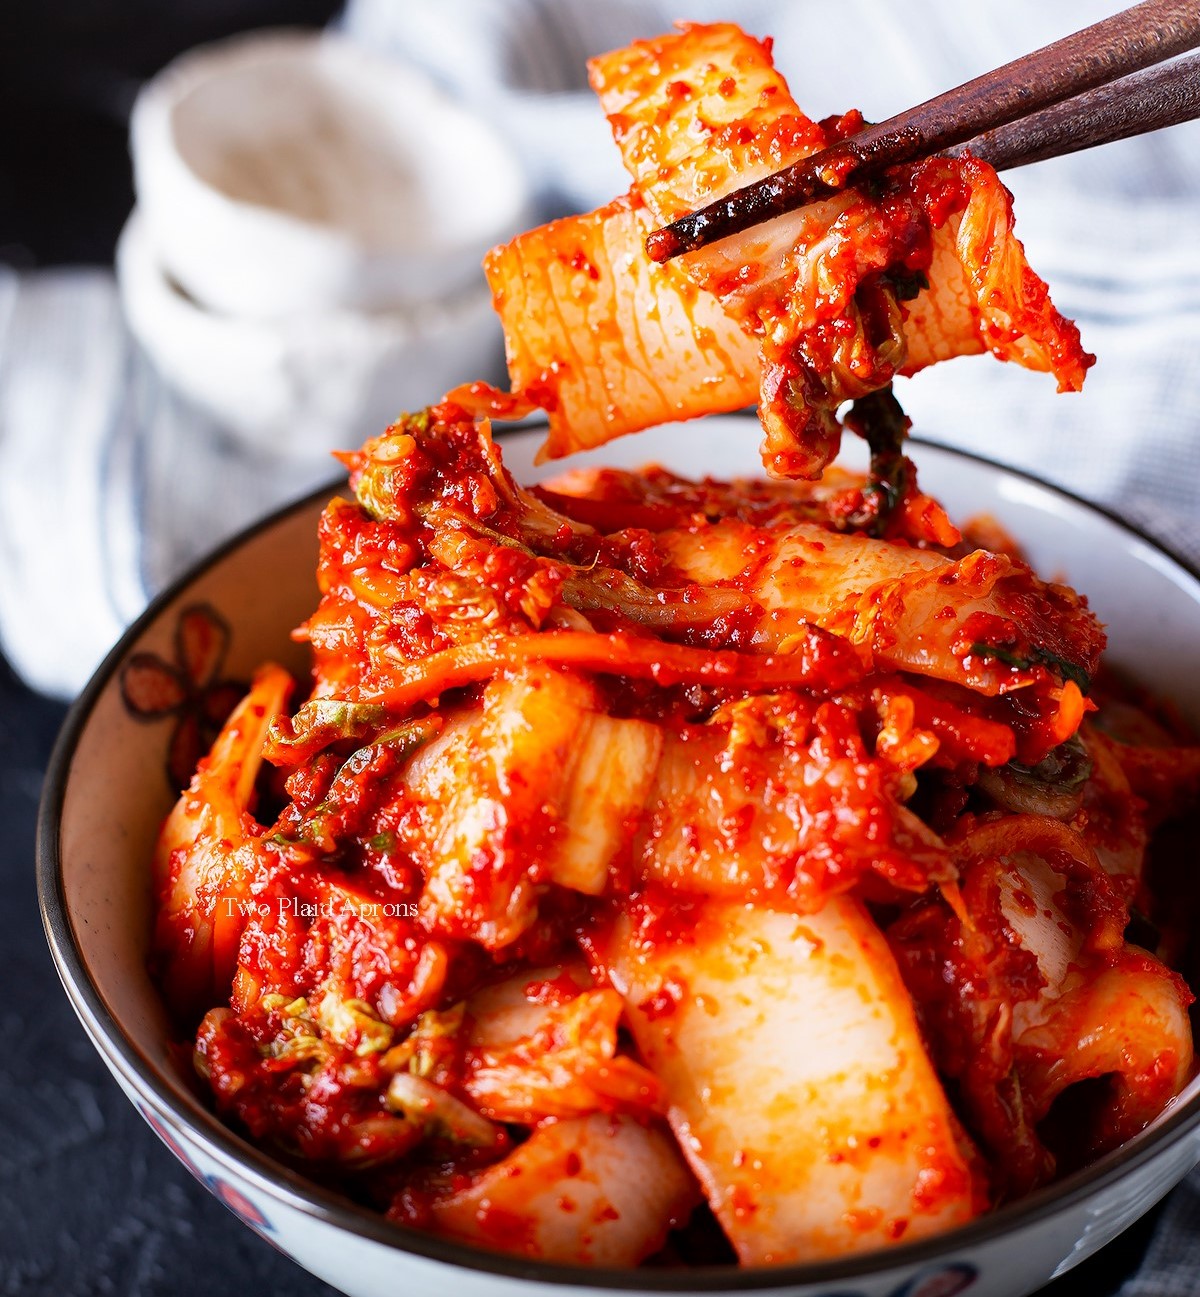 Her Şeyden Biraz: Güney Kore Yemek Kültürü! - McCase